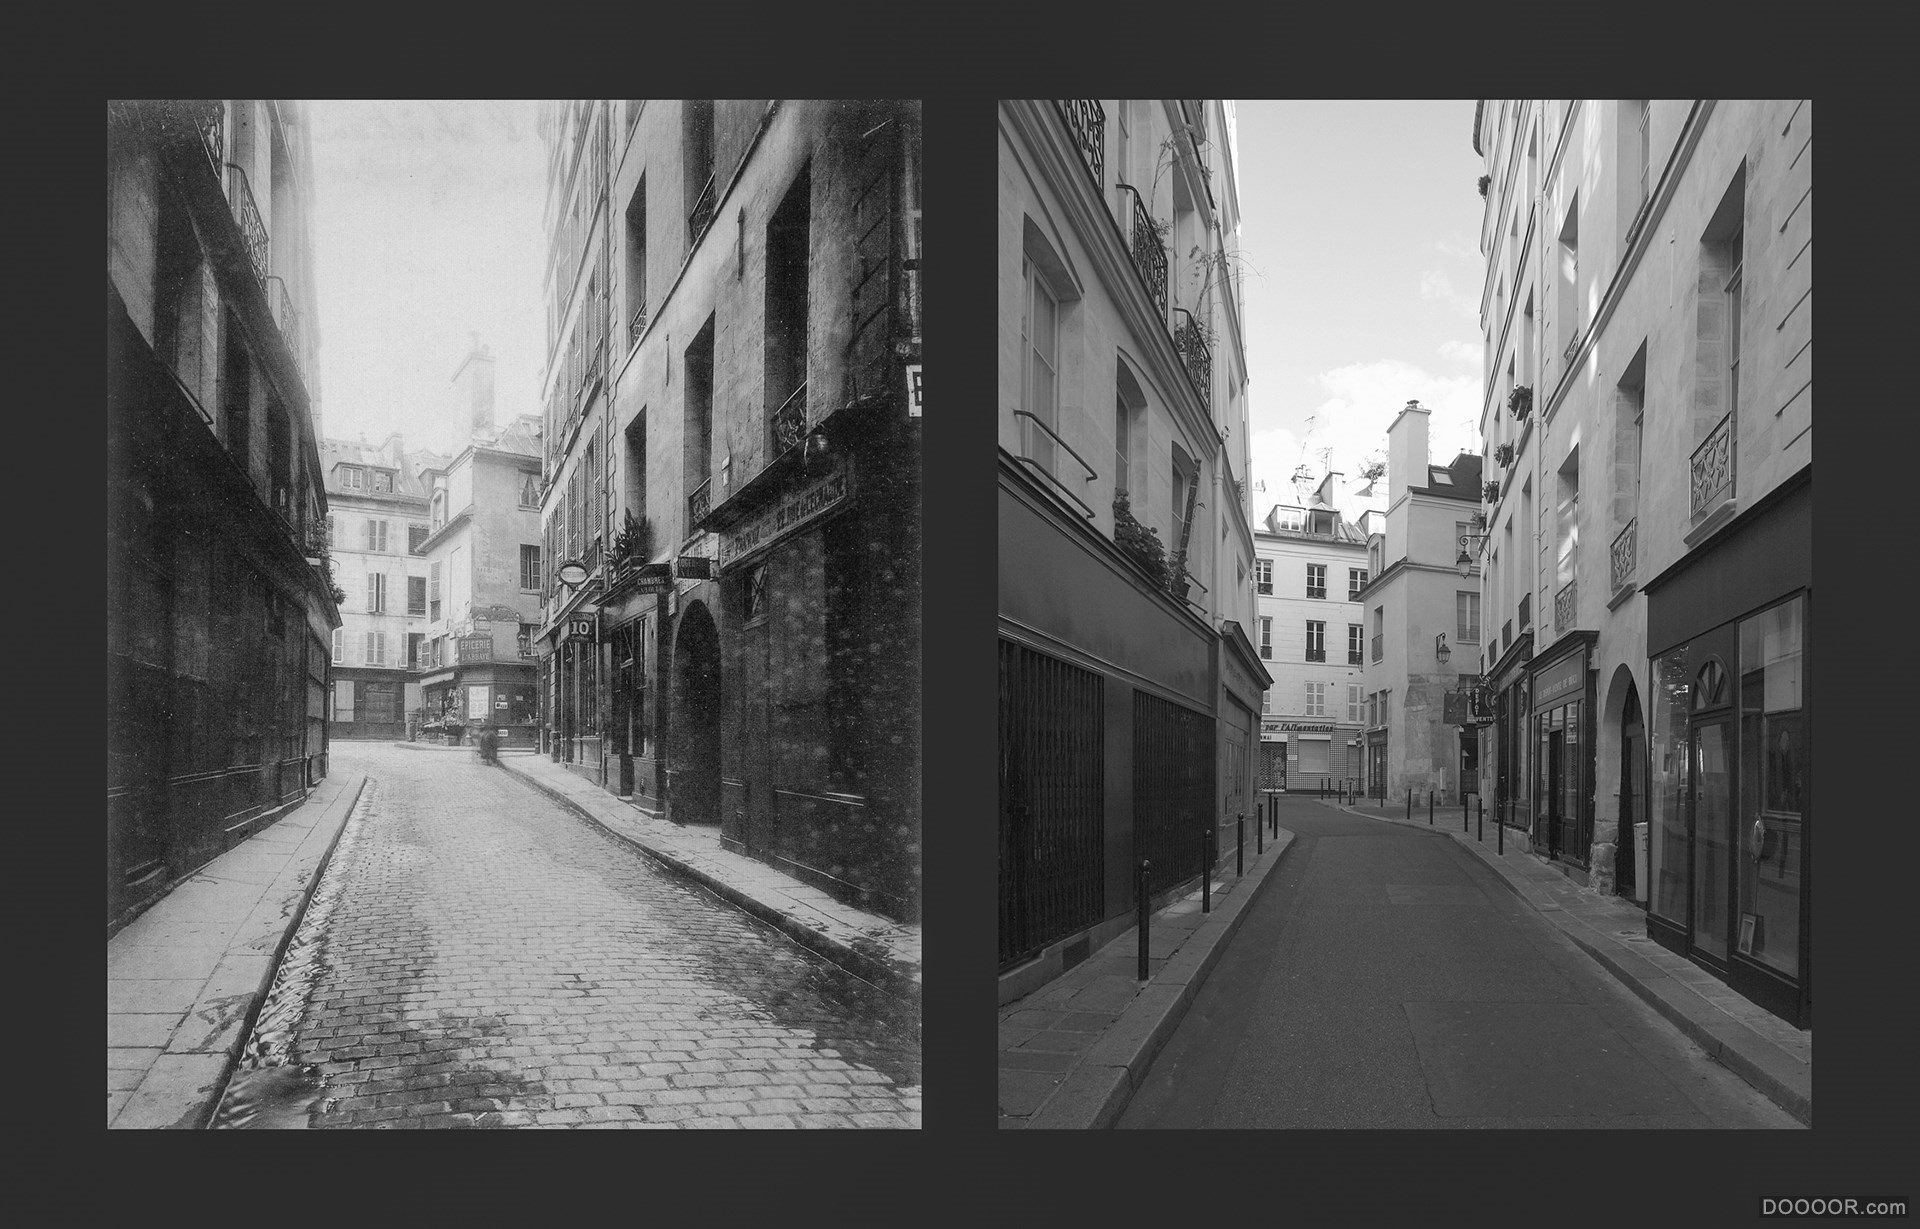 过去与现在-巴黎街头照片对比 [50P] (15).jpg